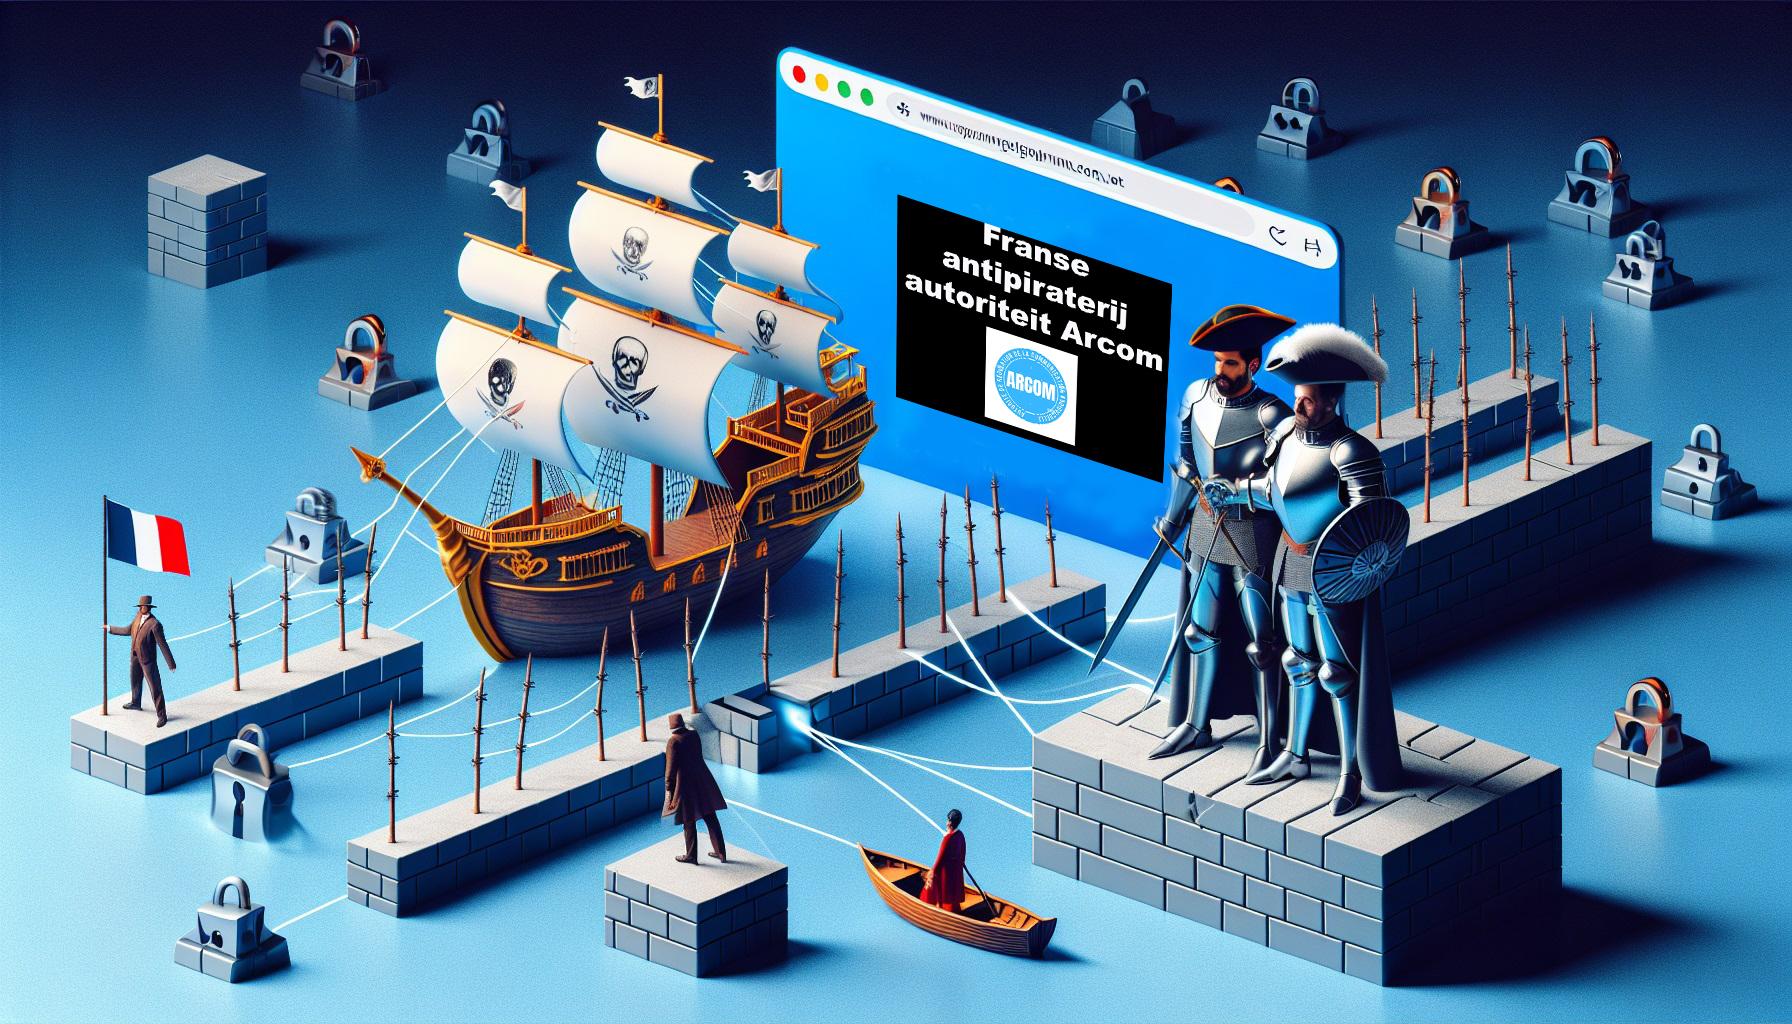 Meer informatie over "De Franse antipiraterij autoriteit Arcom onthult hoe en waarom piraten blokkering omzeilen"